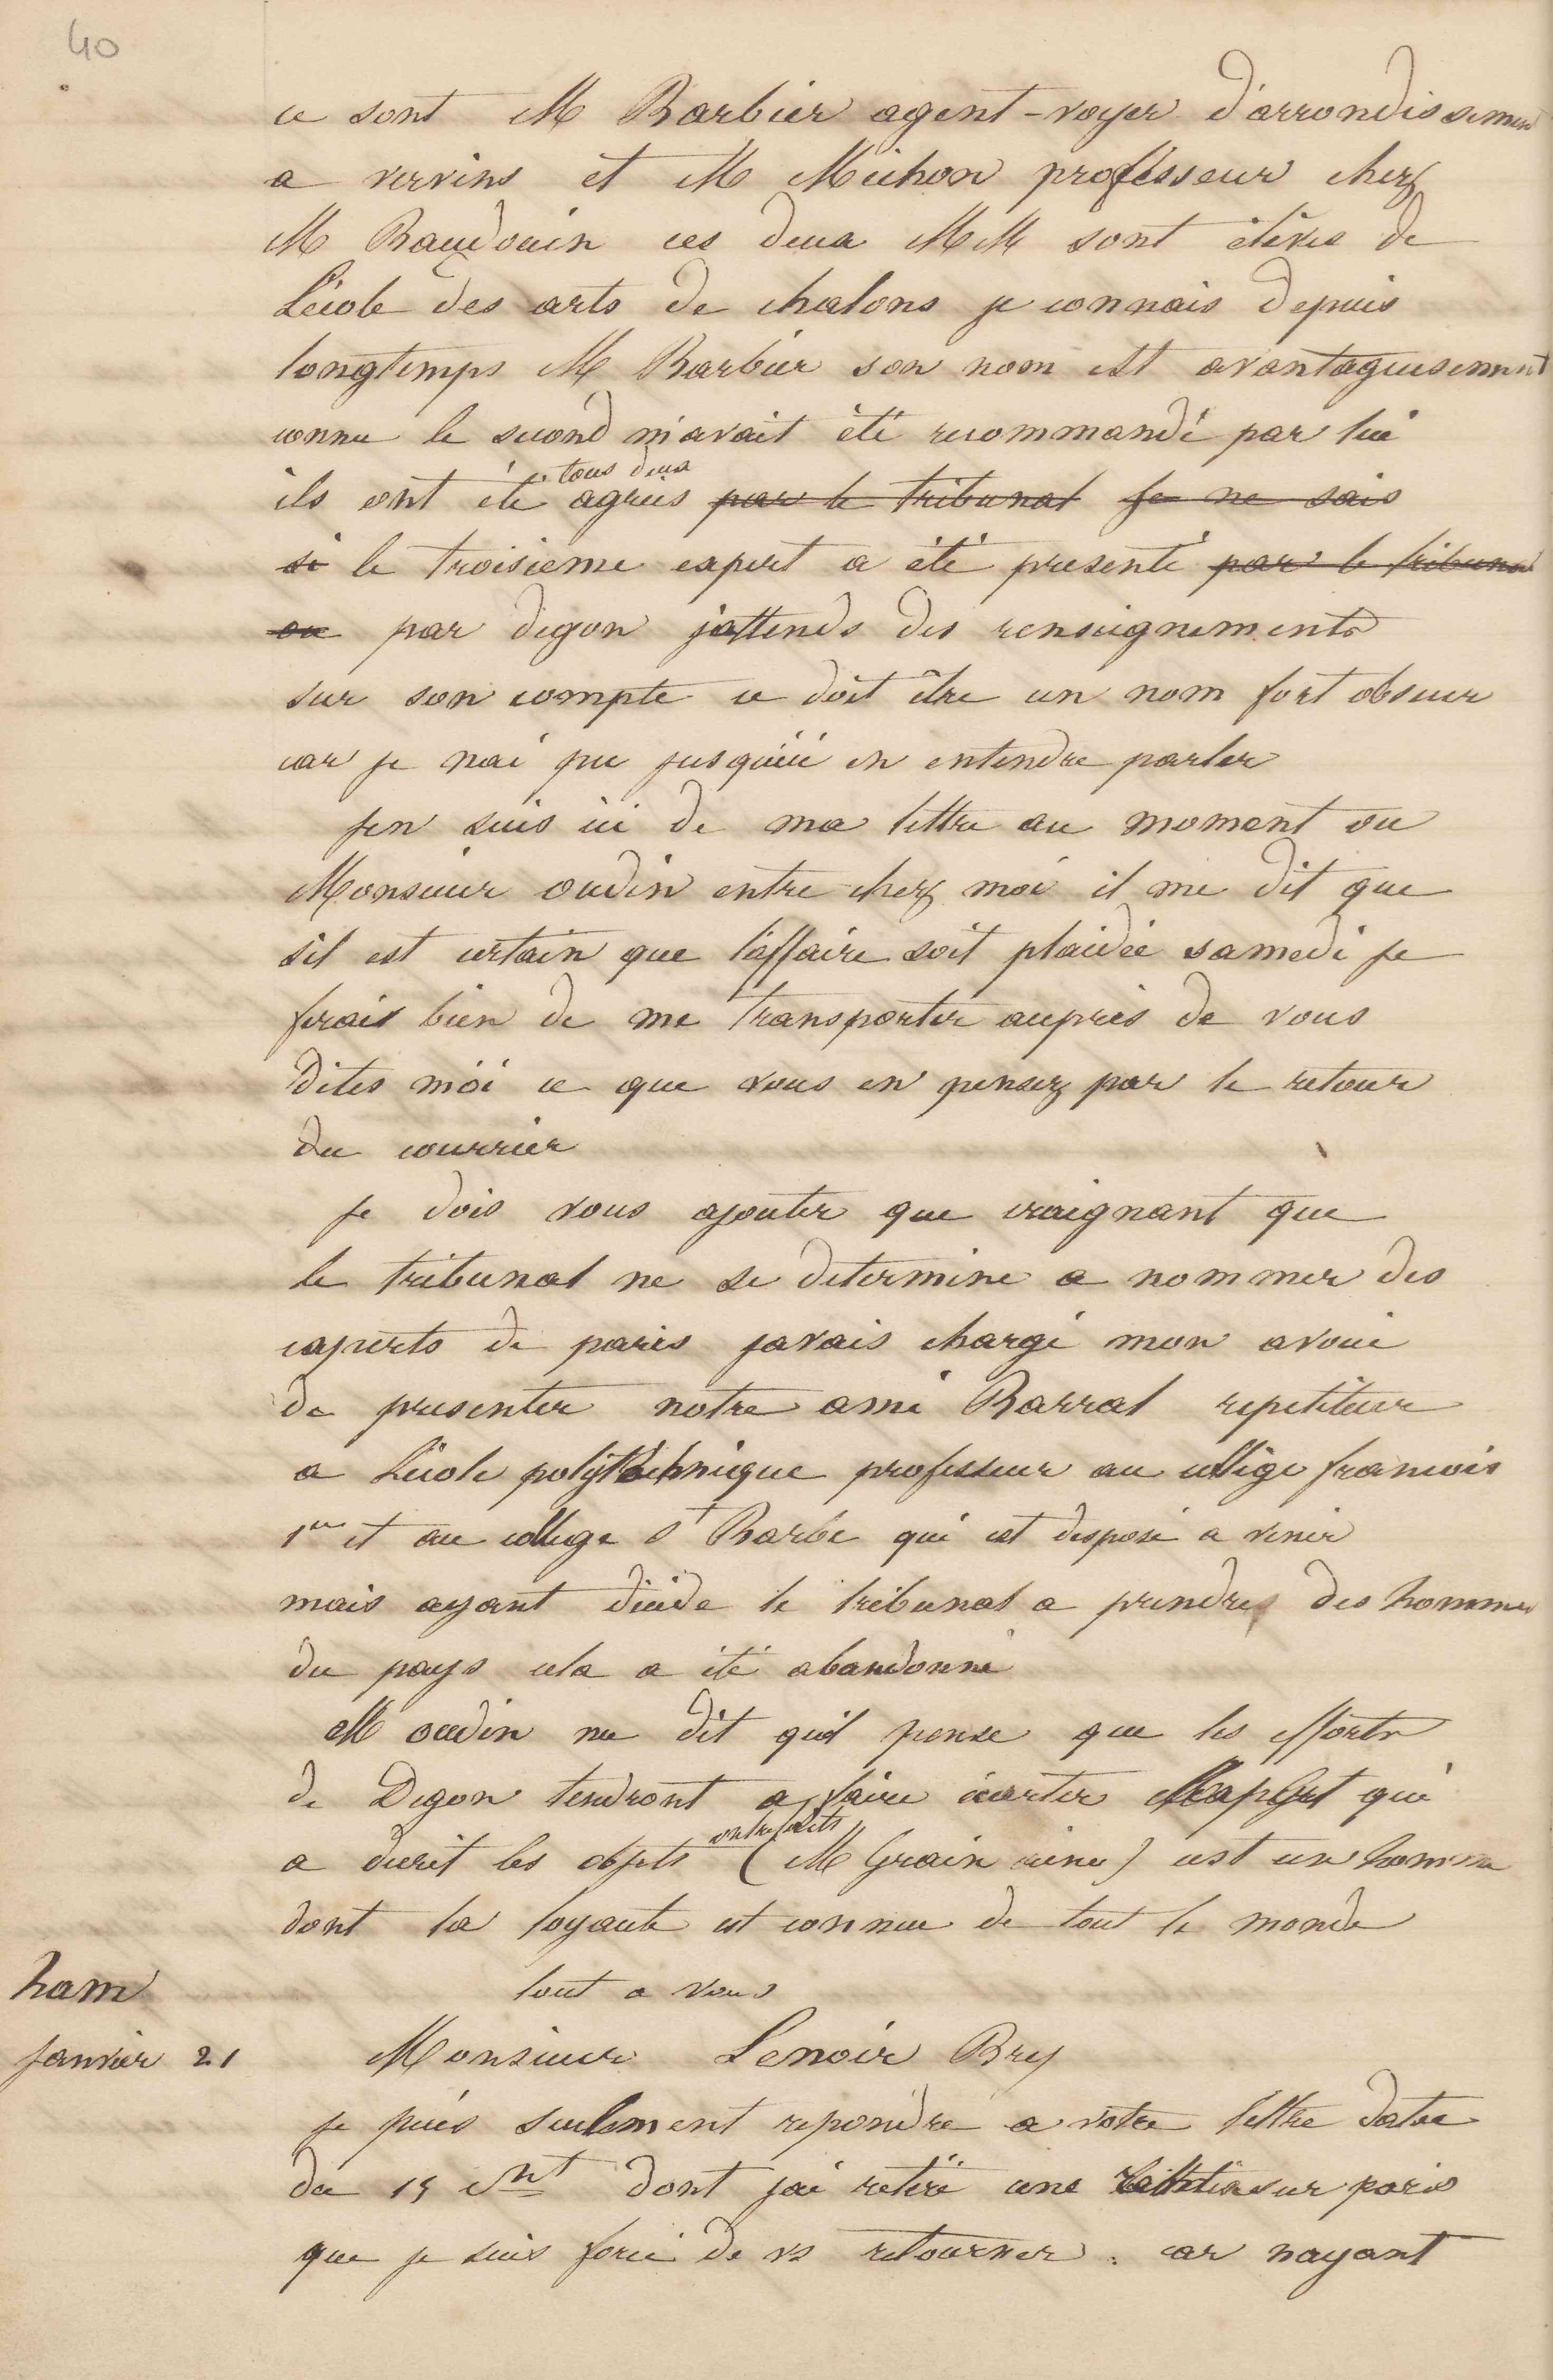 Jean-Baptiste André Godin à Jules-Charles Godon, 19 janvier 1847